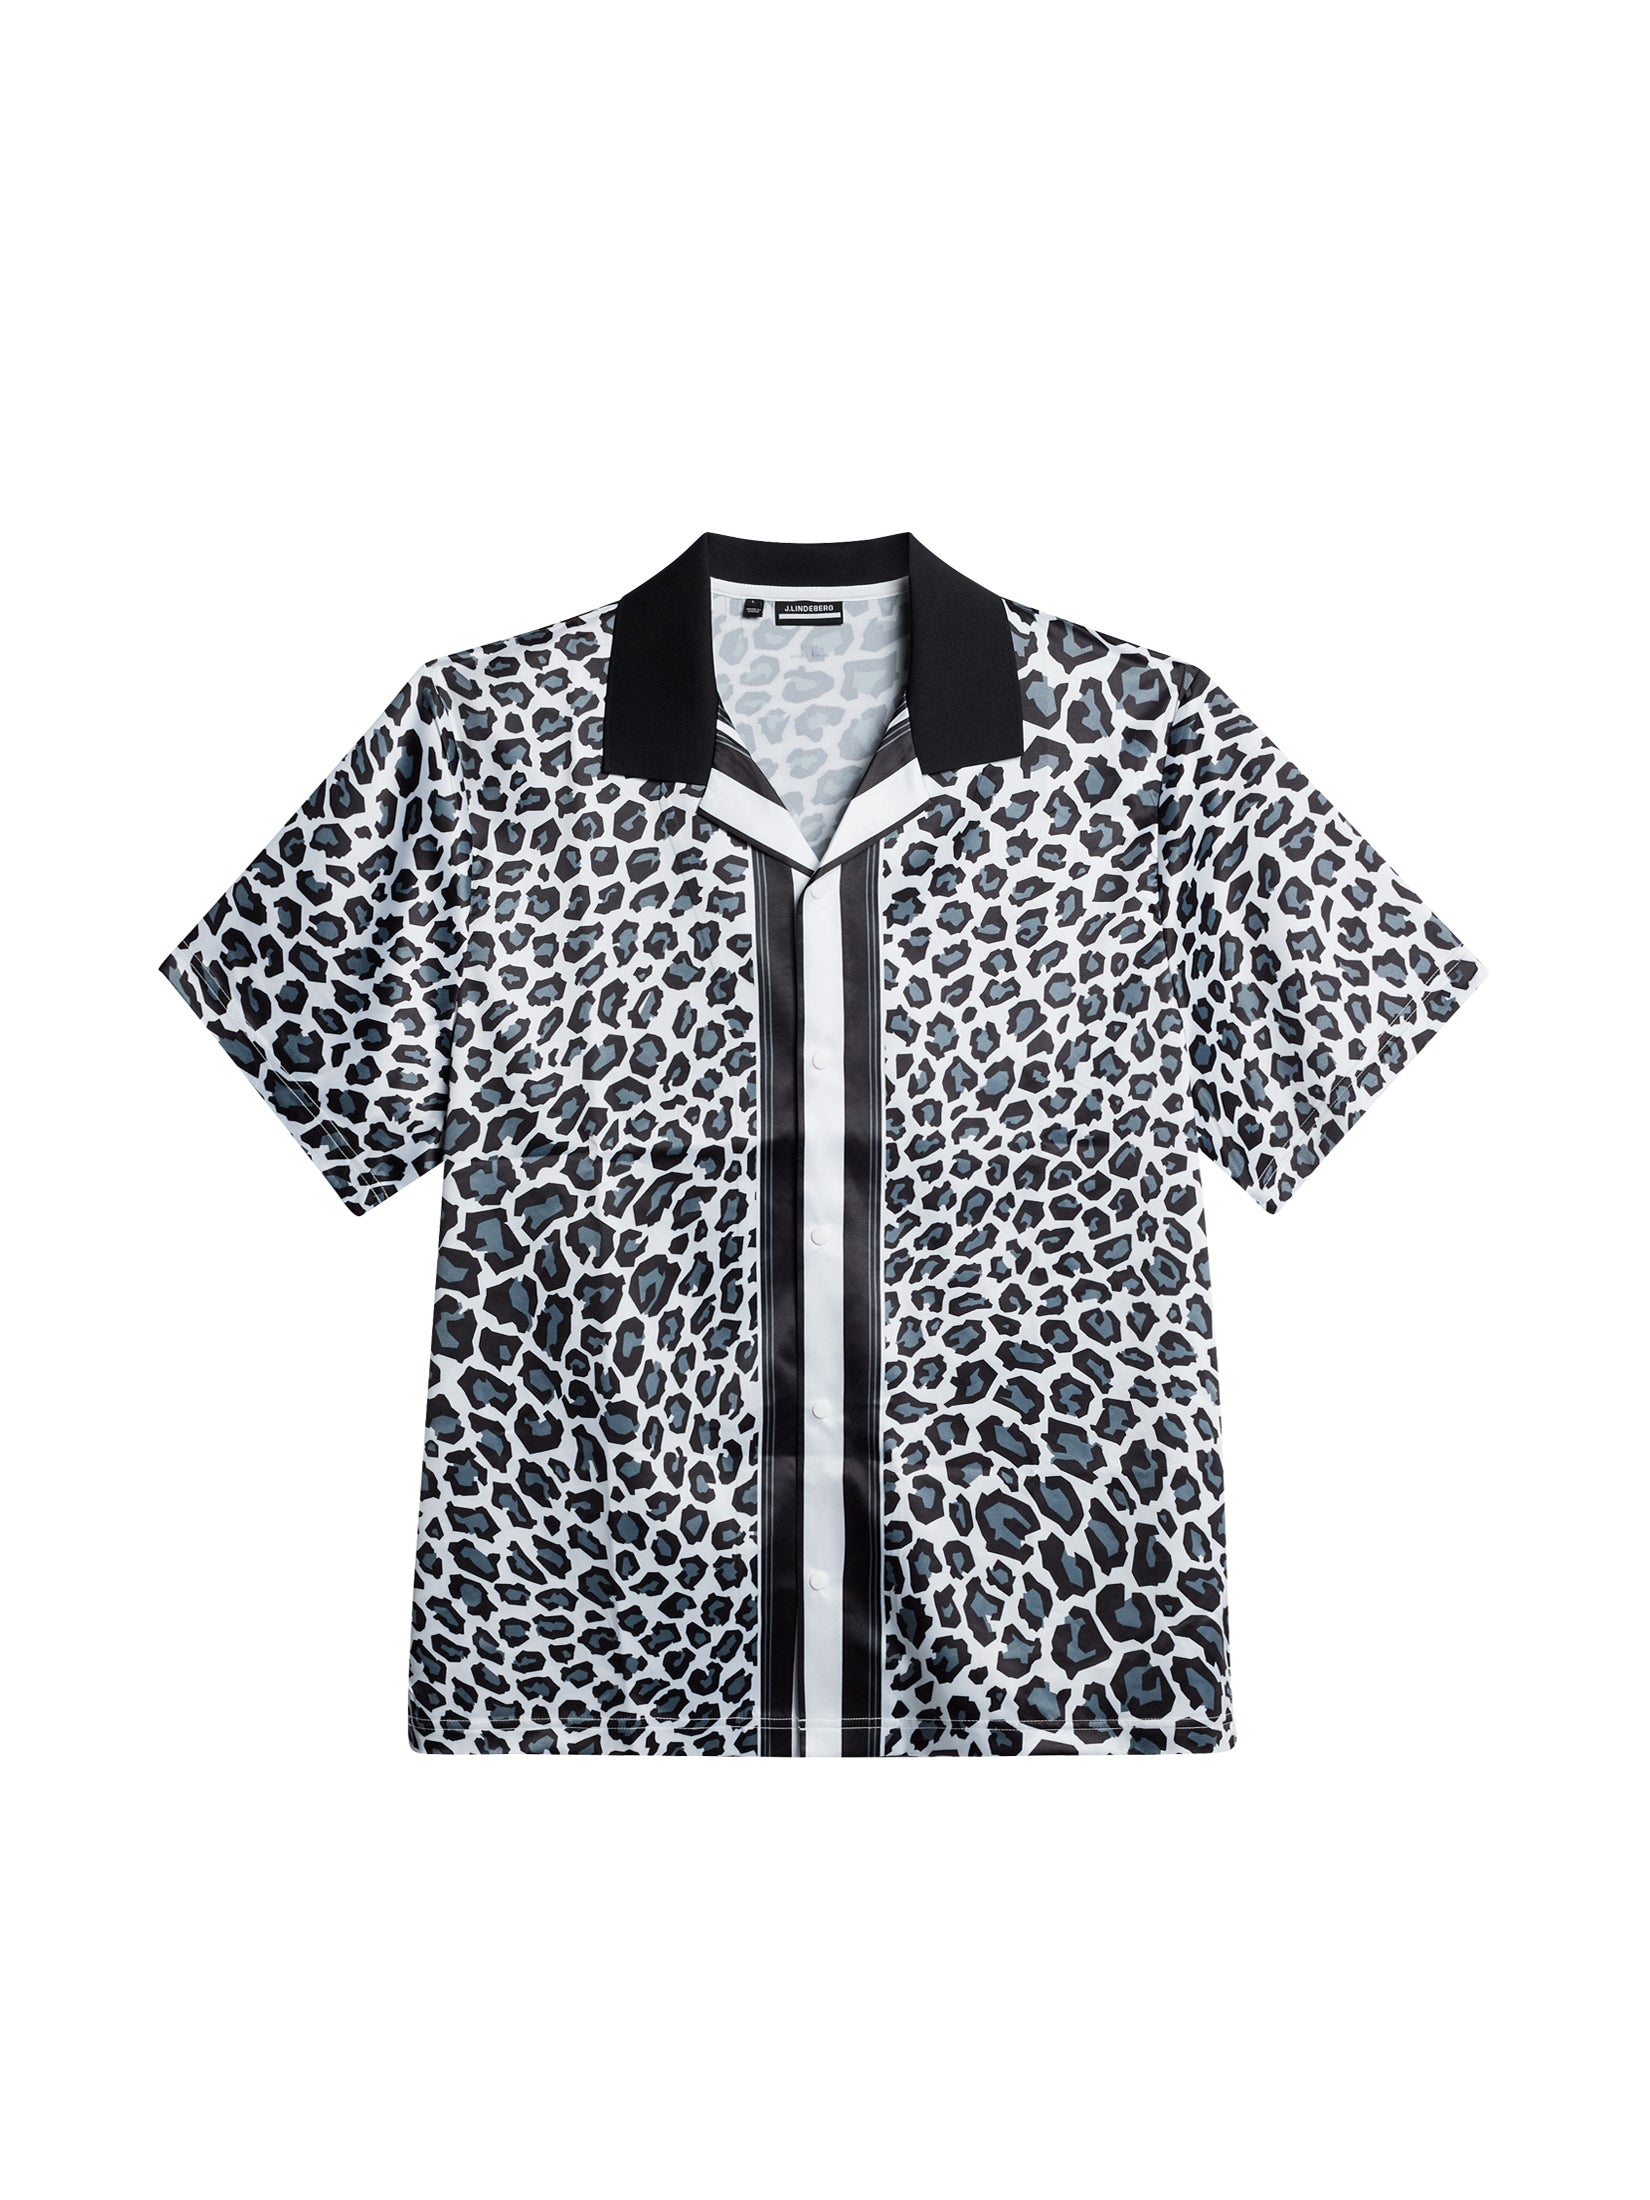 제이린드버그 J.LINDEBERG Roscoe Print Shirt,BW Leopard